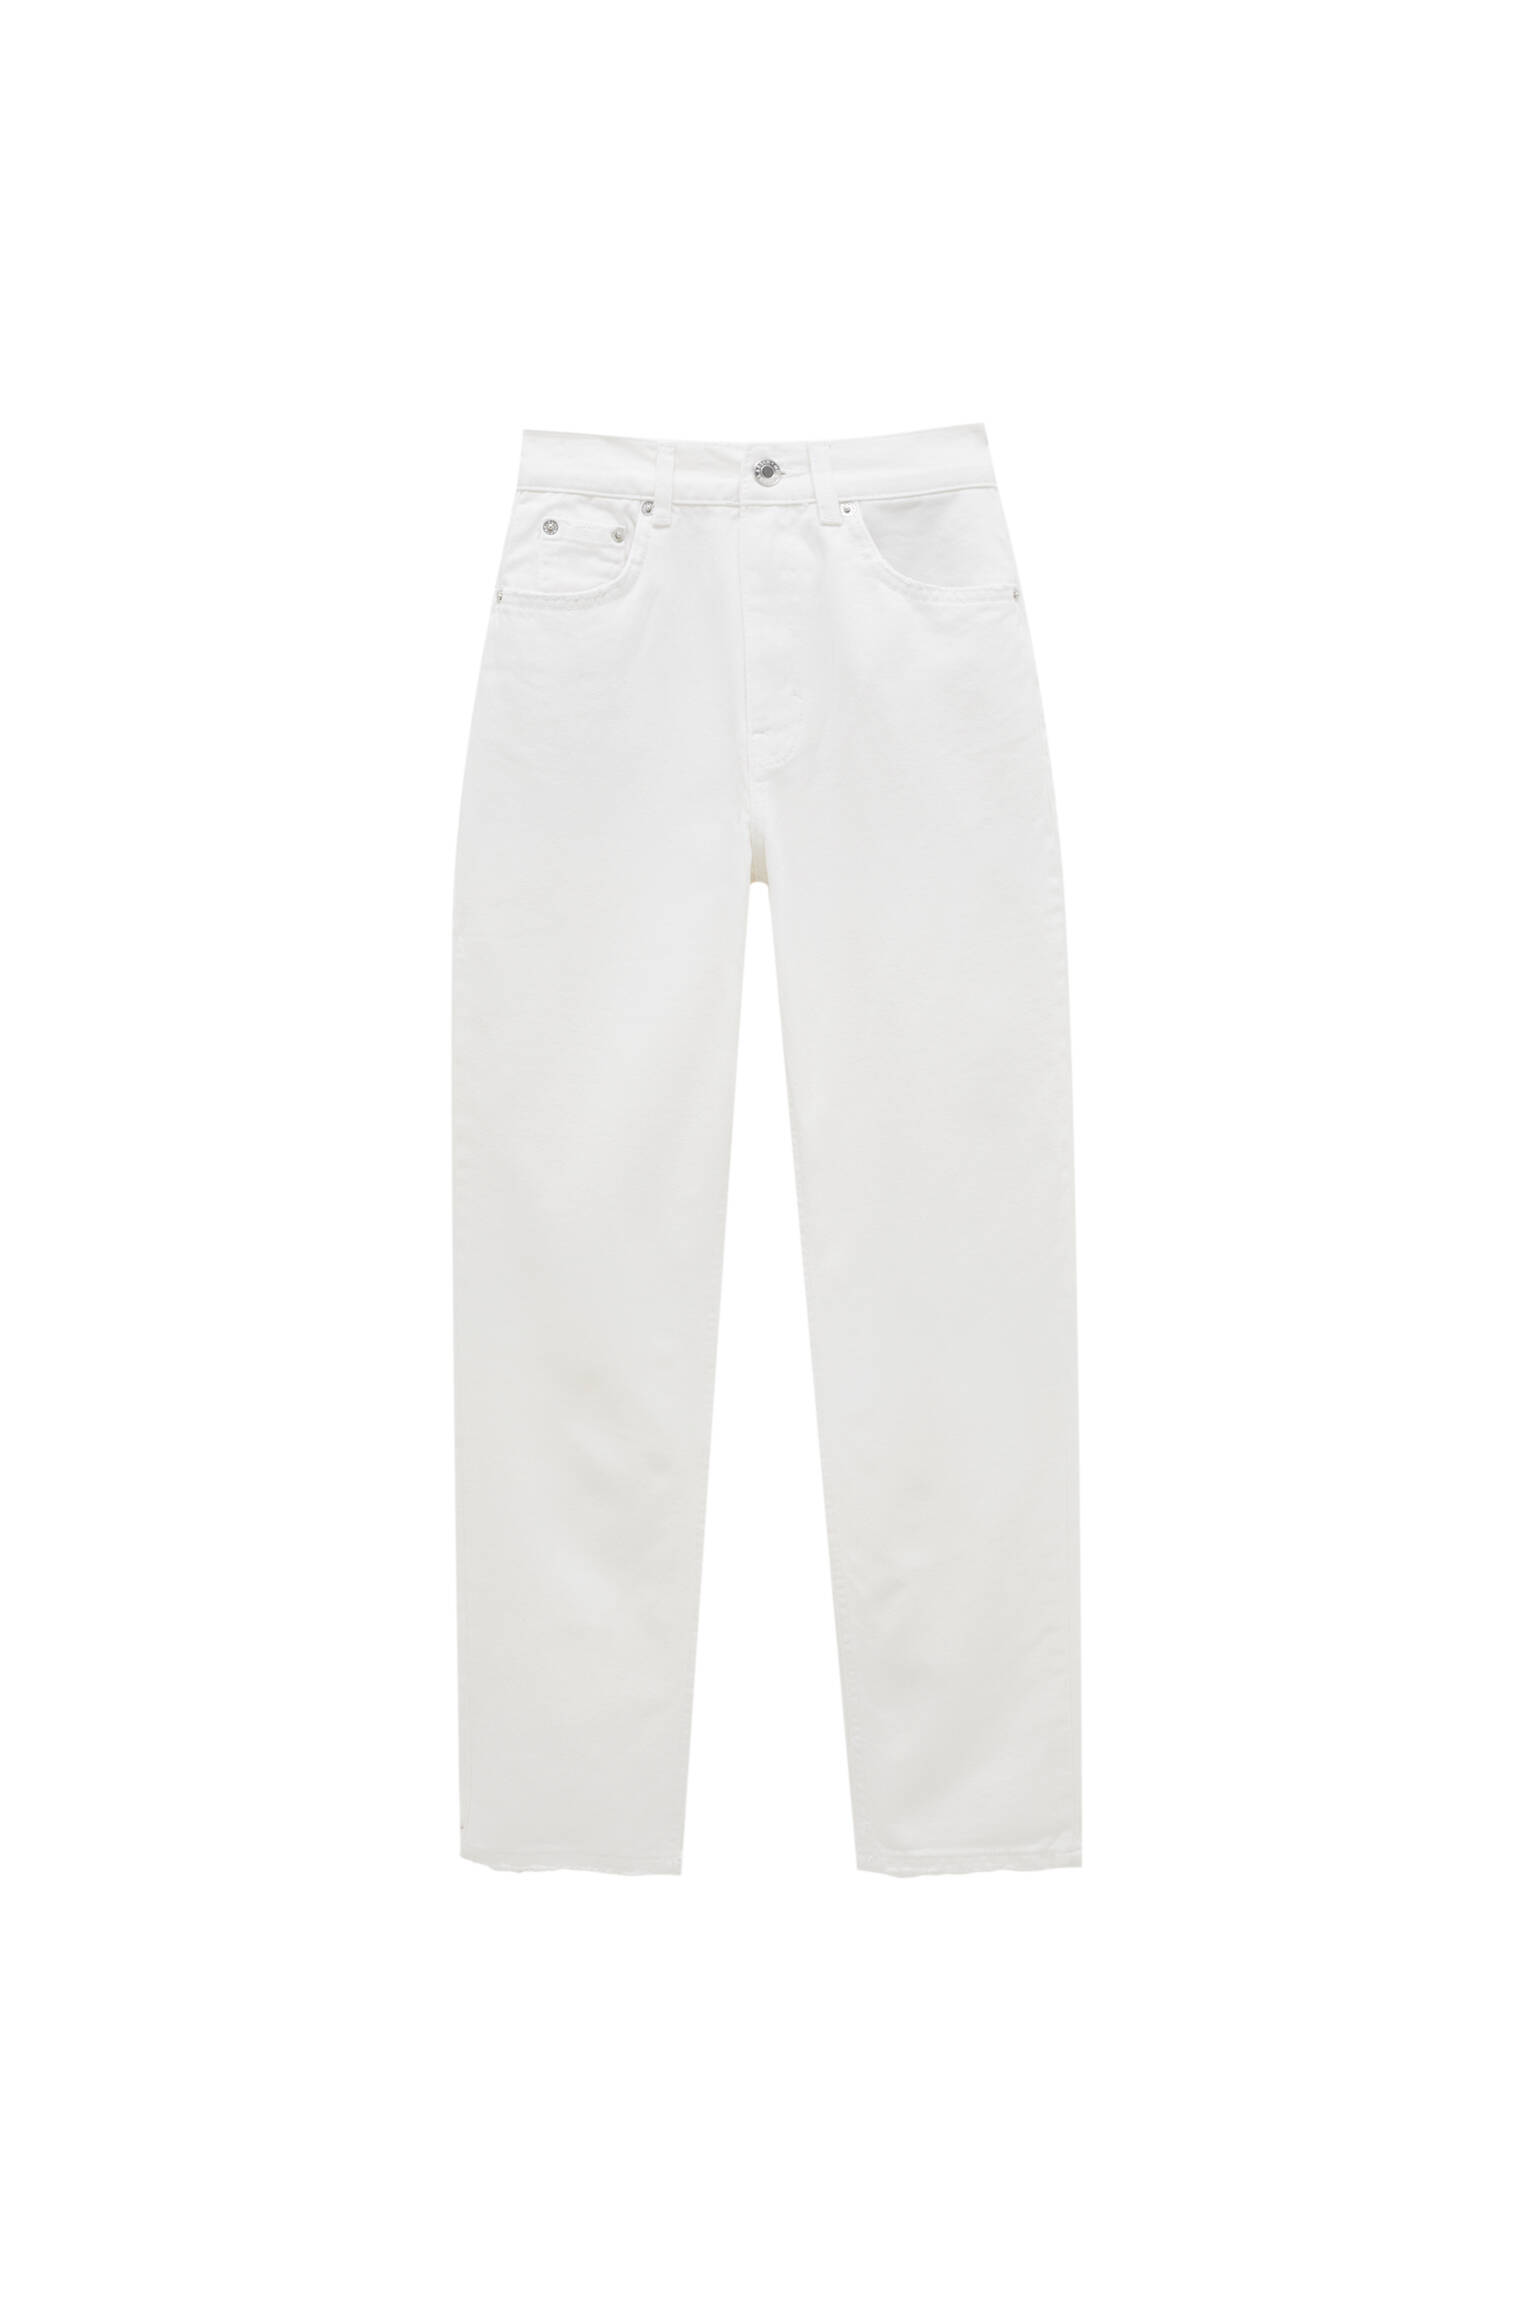 БЕЛЫЙ Базовые джинсы mom fit - органический хлопок (не менее 50%) Pull & Bear